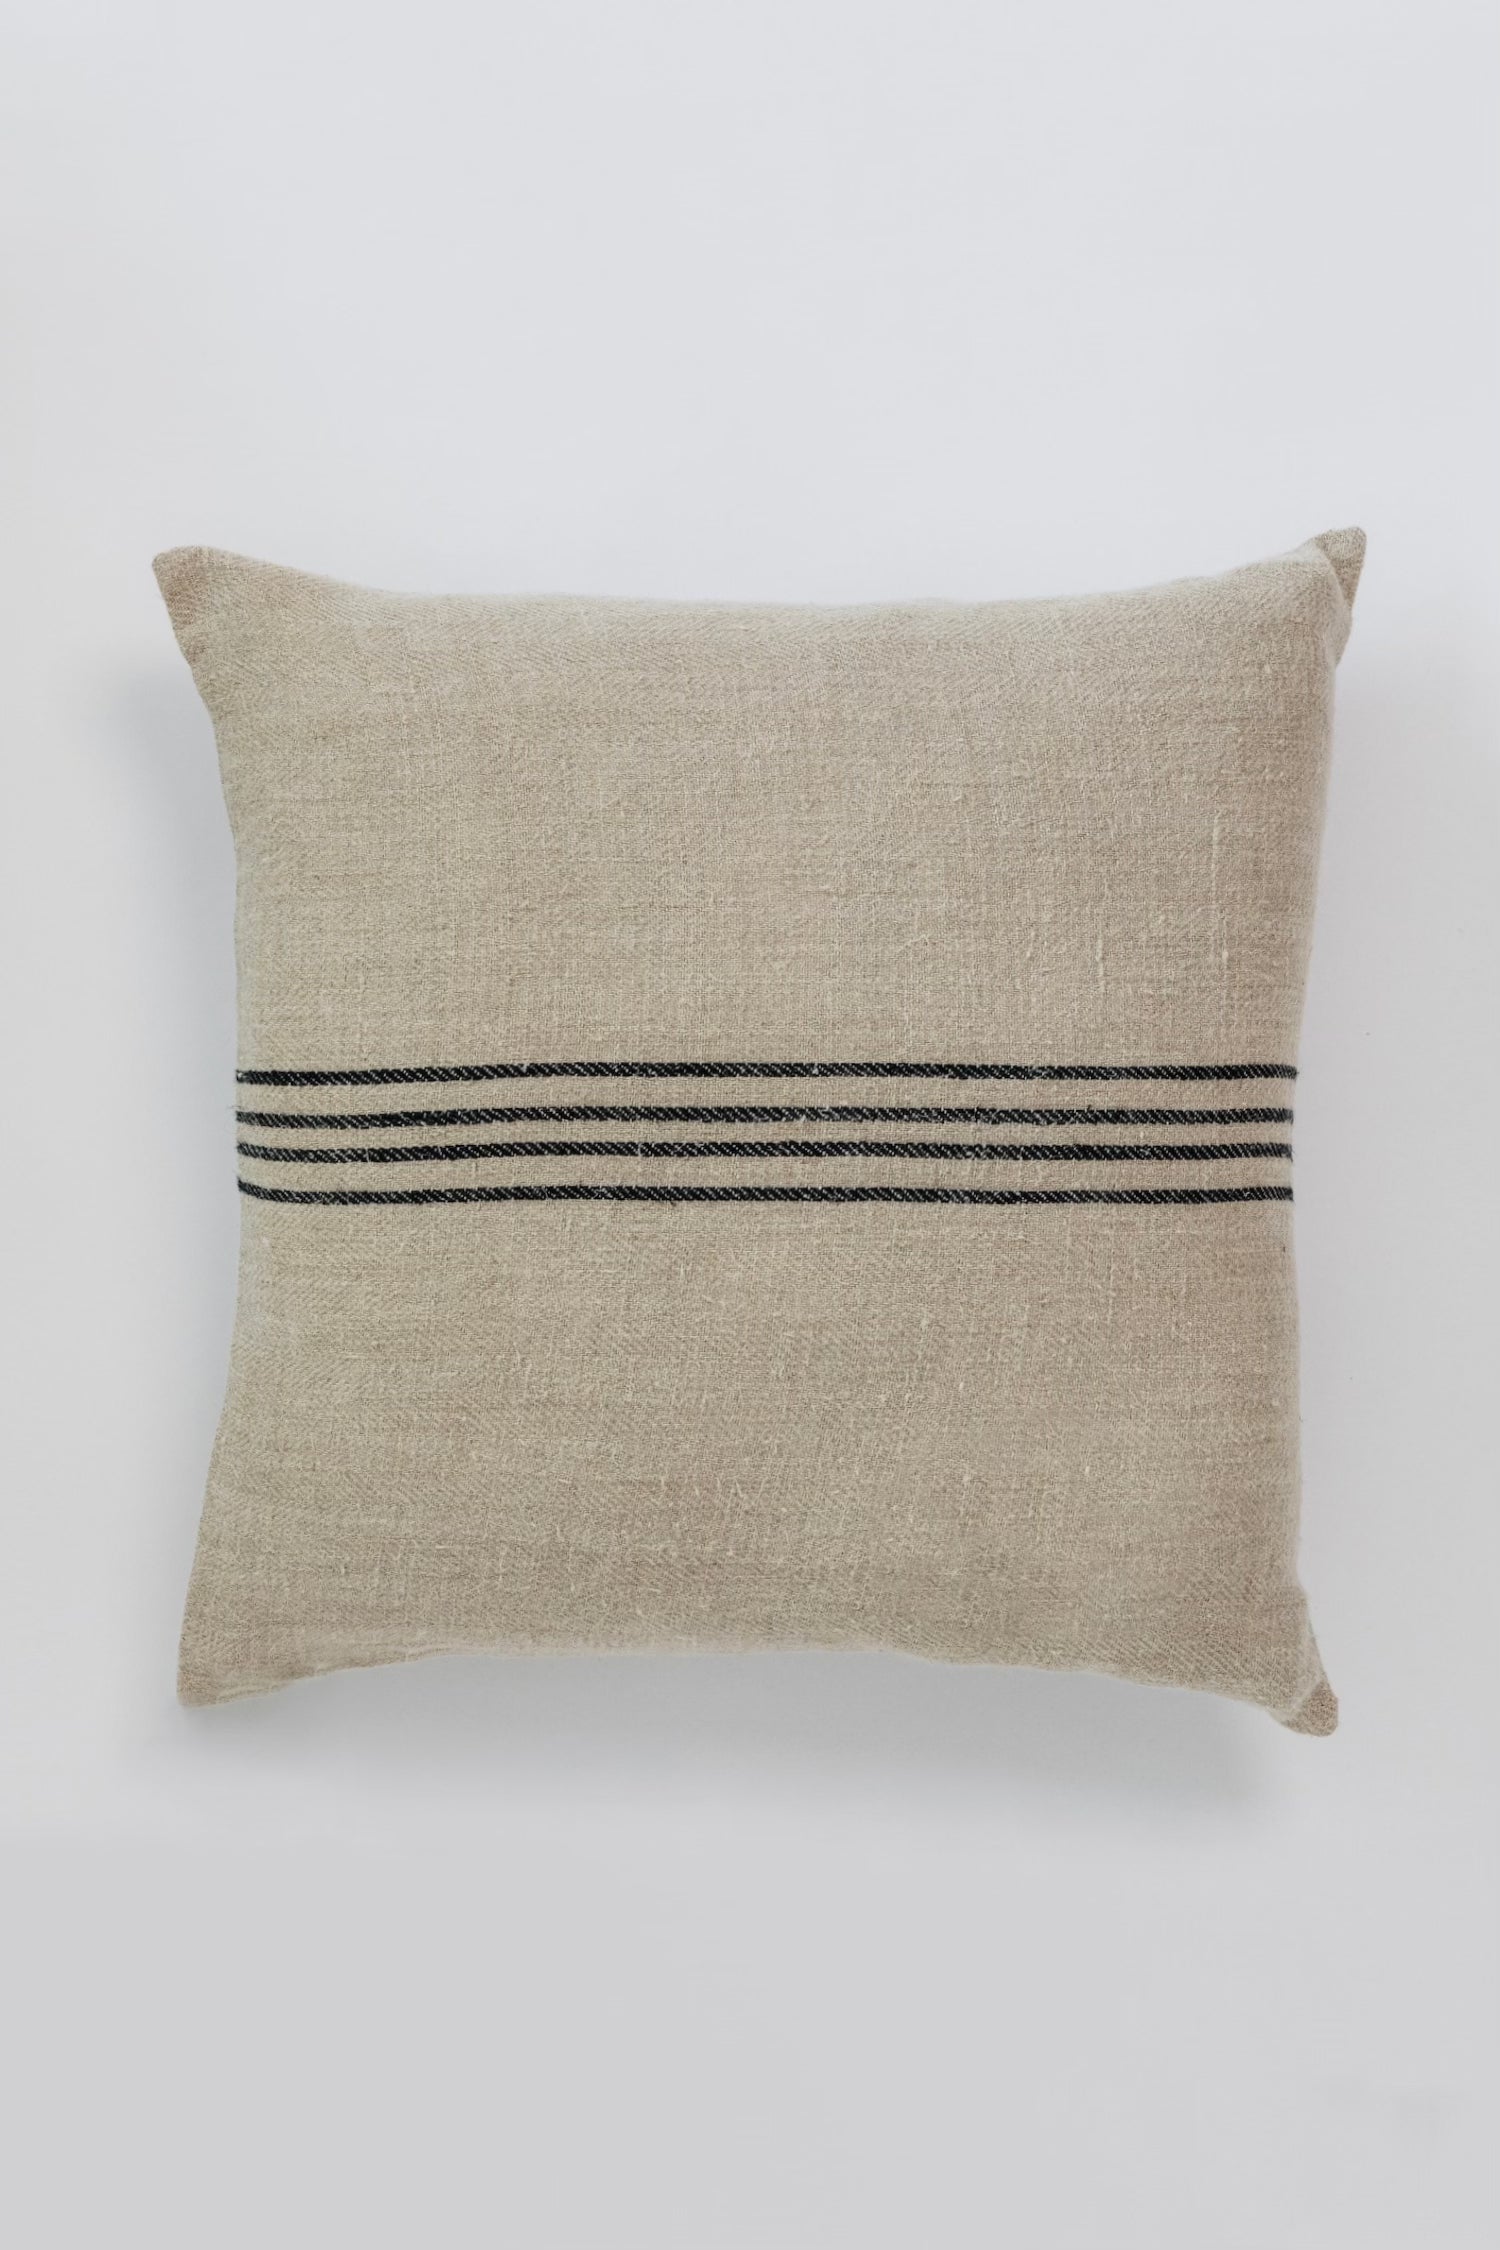 Harden Striped Linen Pillow - Tan